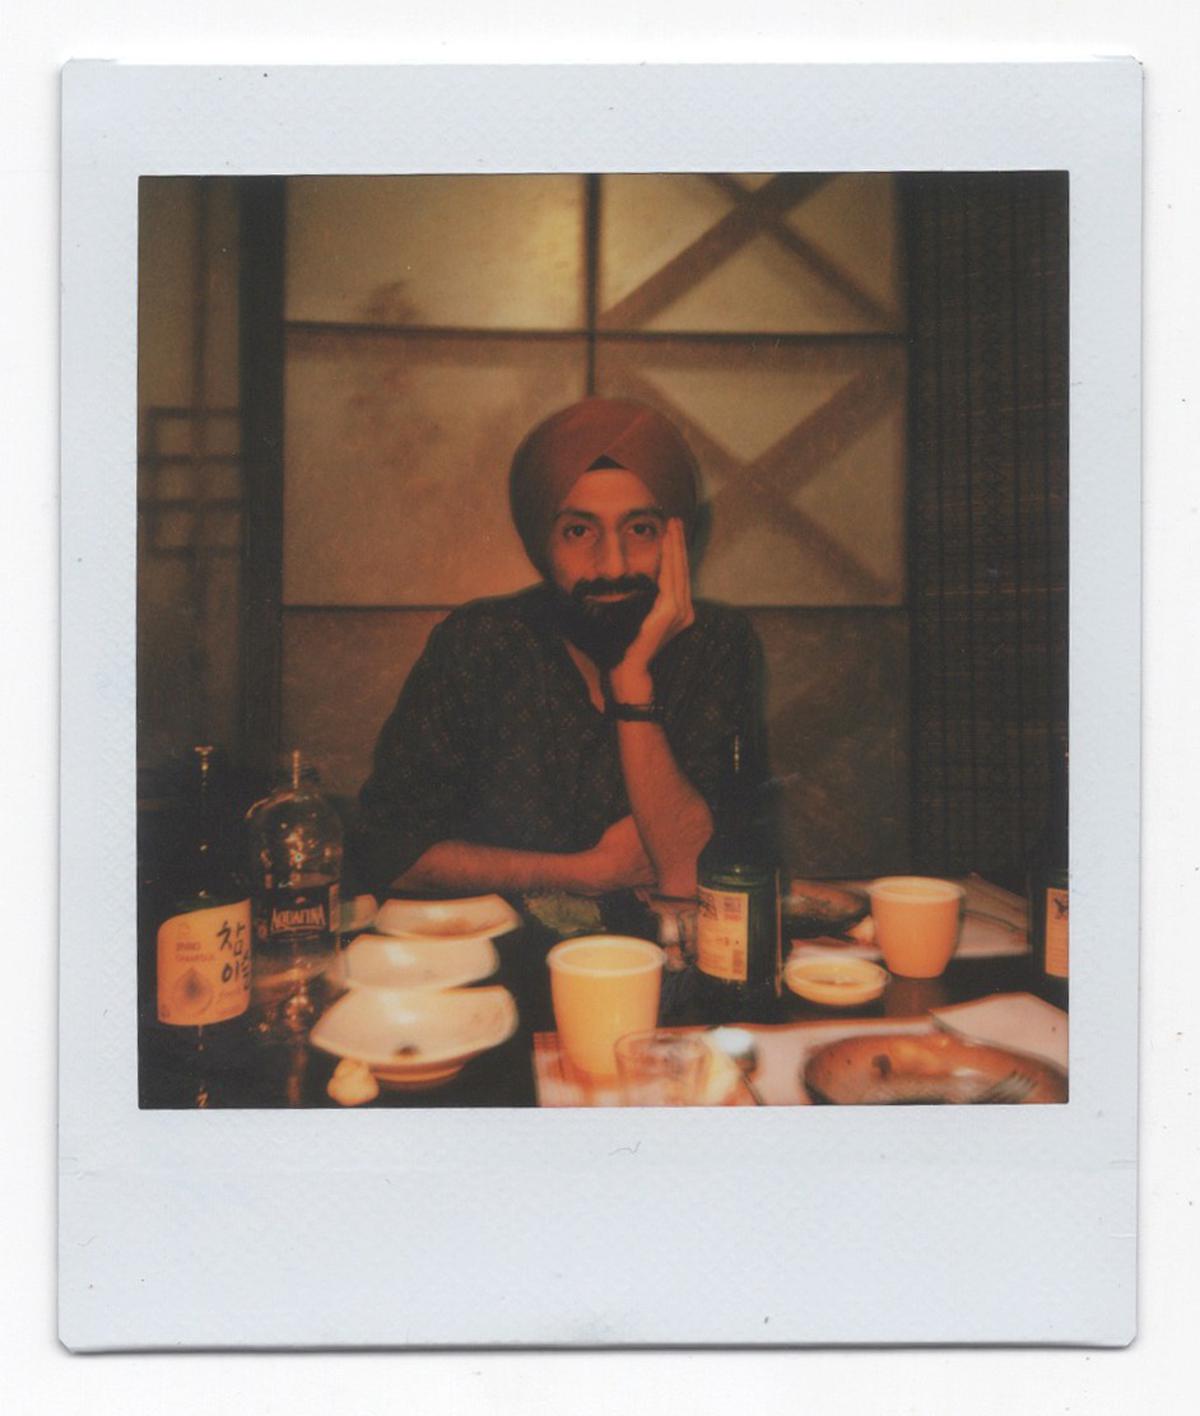 Karanjit Singhâs portrait clicked on an instant film camera